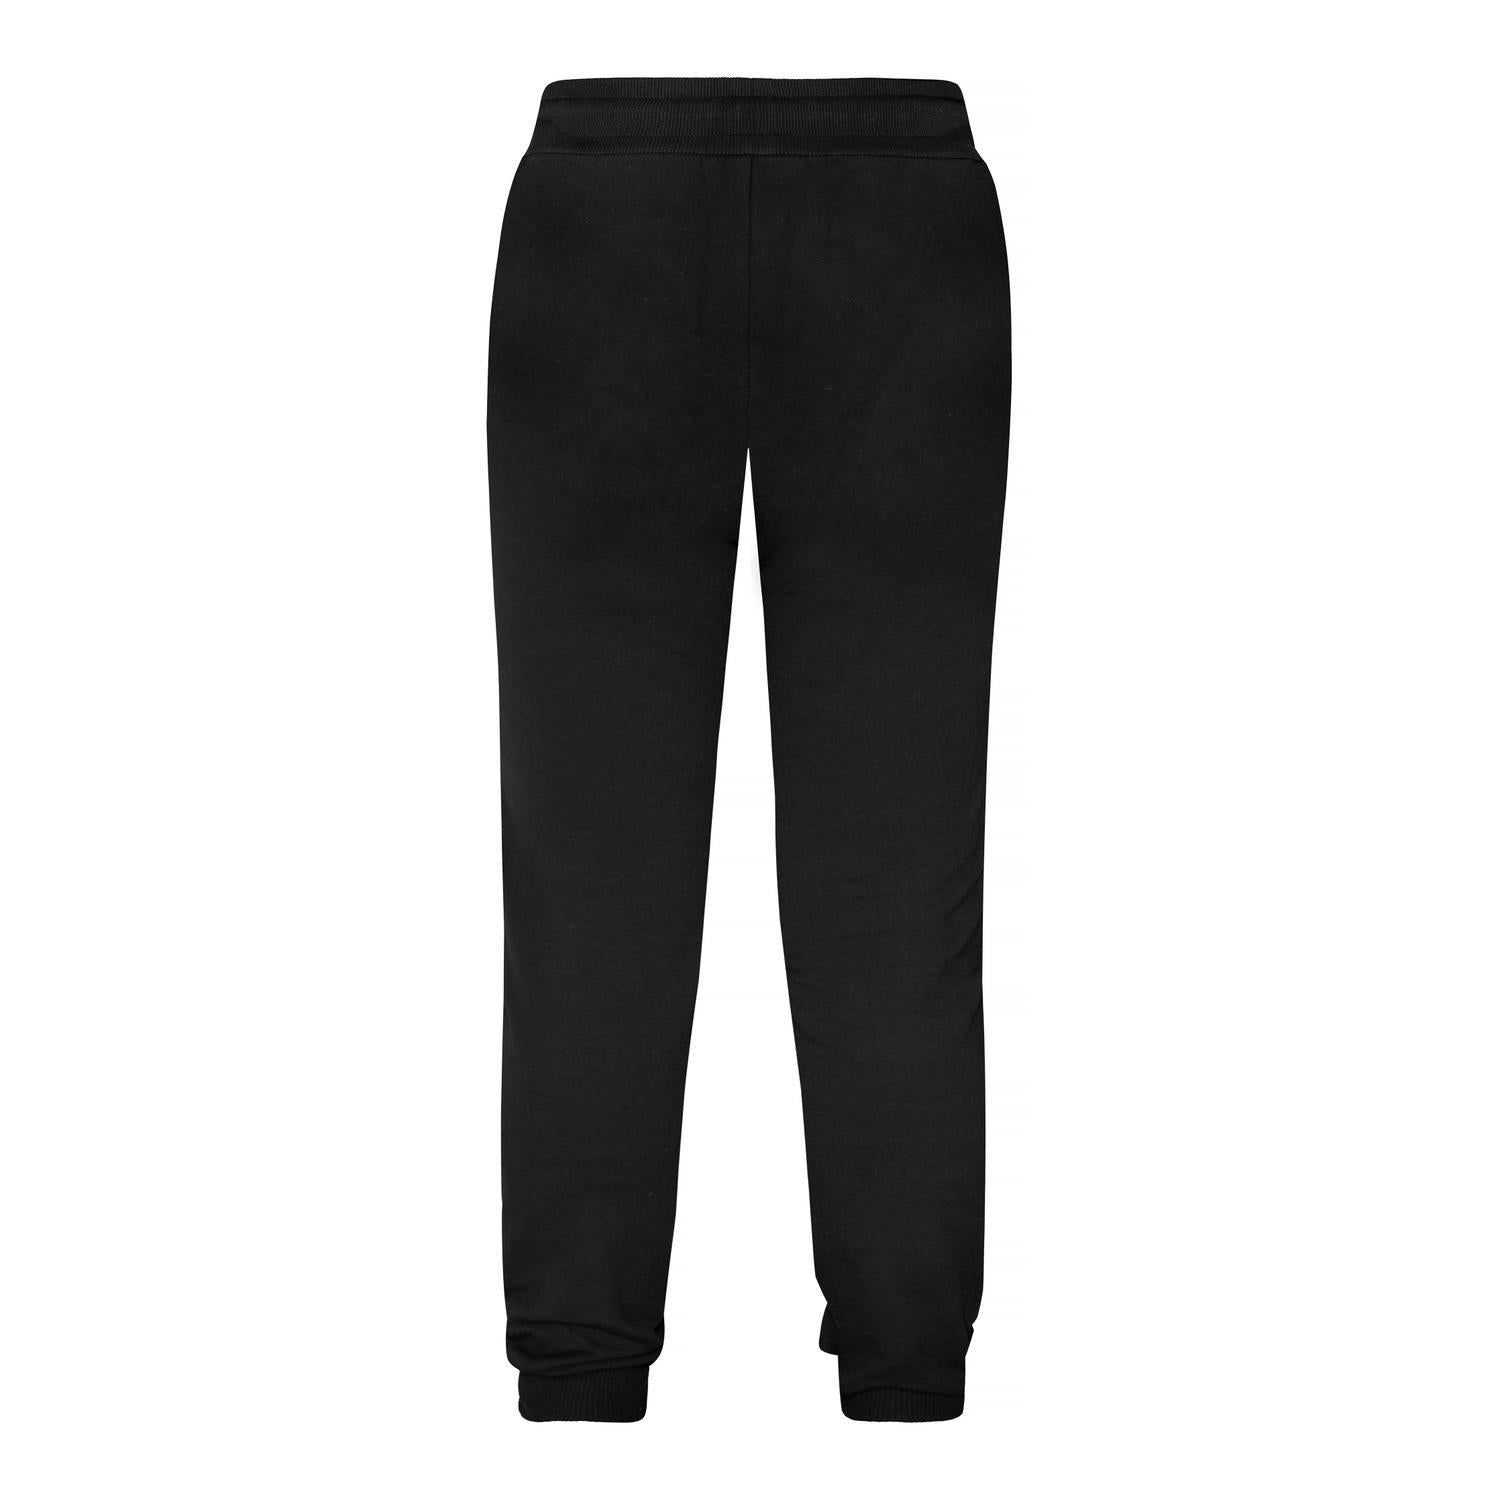 Men's clothing, Universal Comfort Noel Sweatpants (Black)